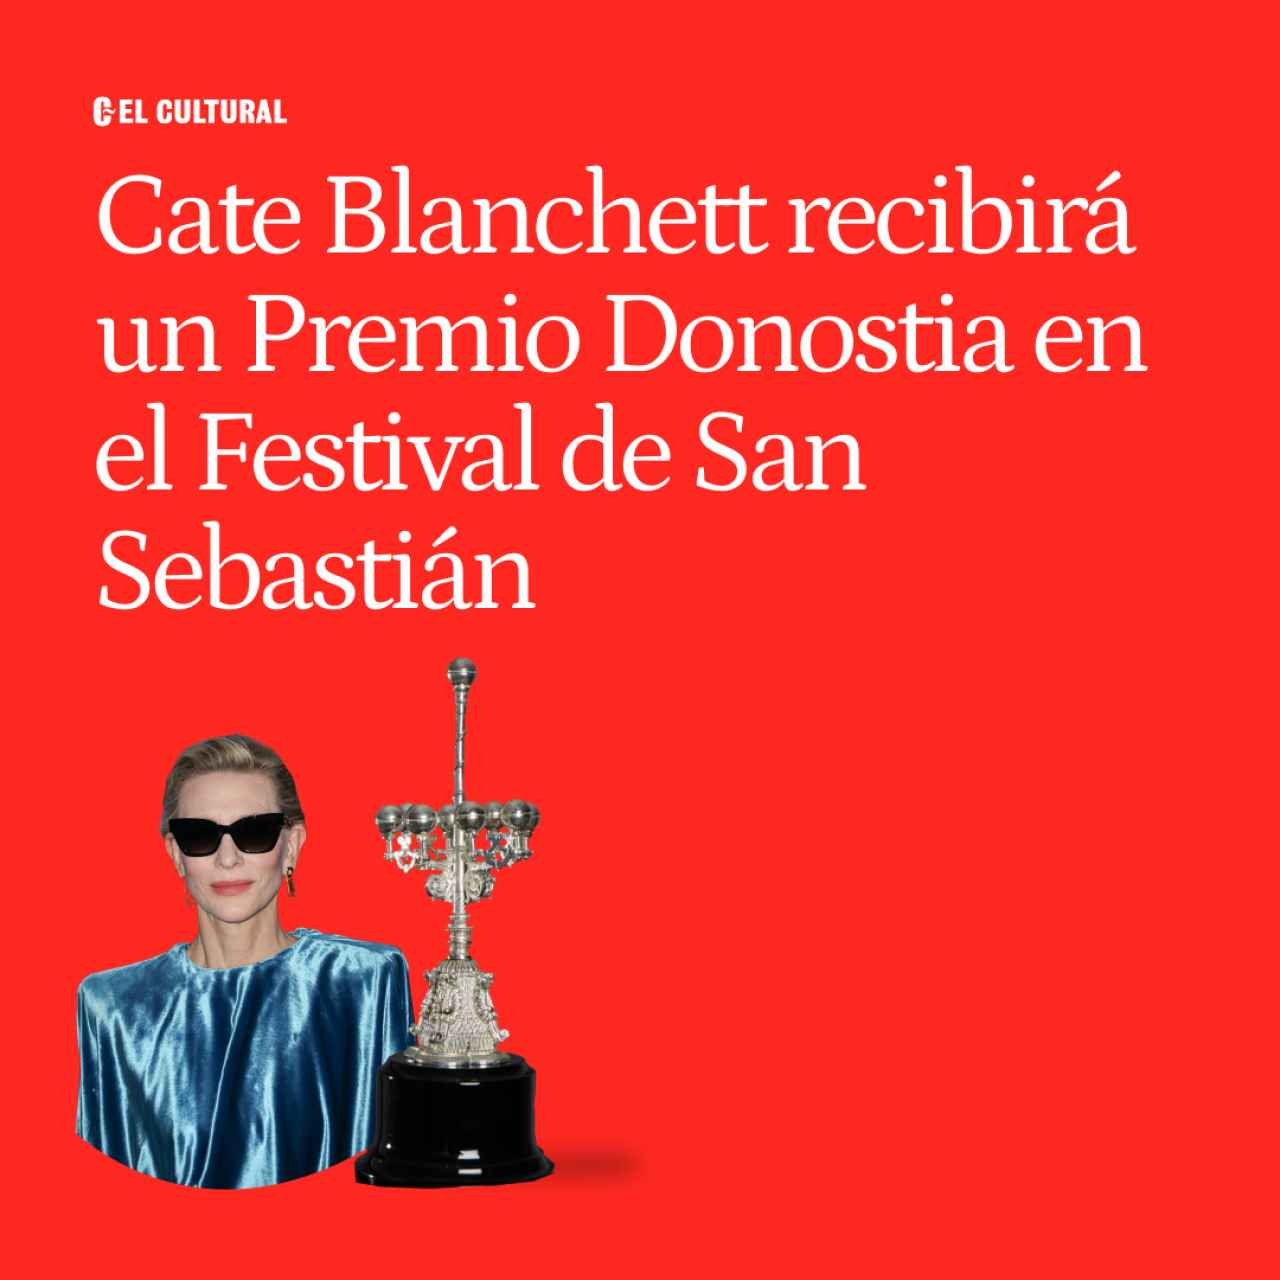 Cate Blanchett protagoniza el cartel del Festival de San Sebastián, donde recibirá un Premio Donostia